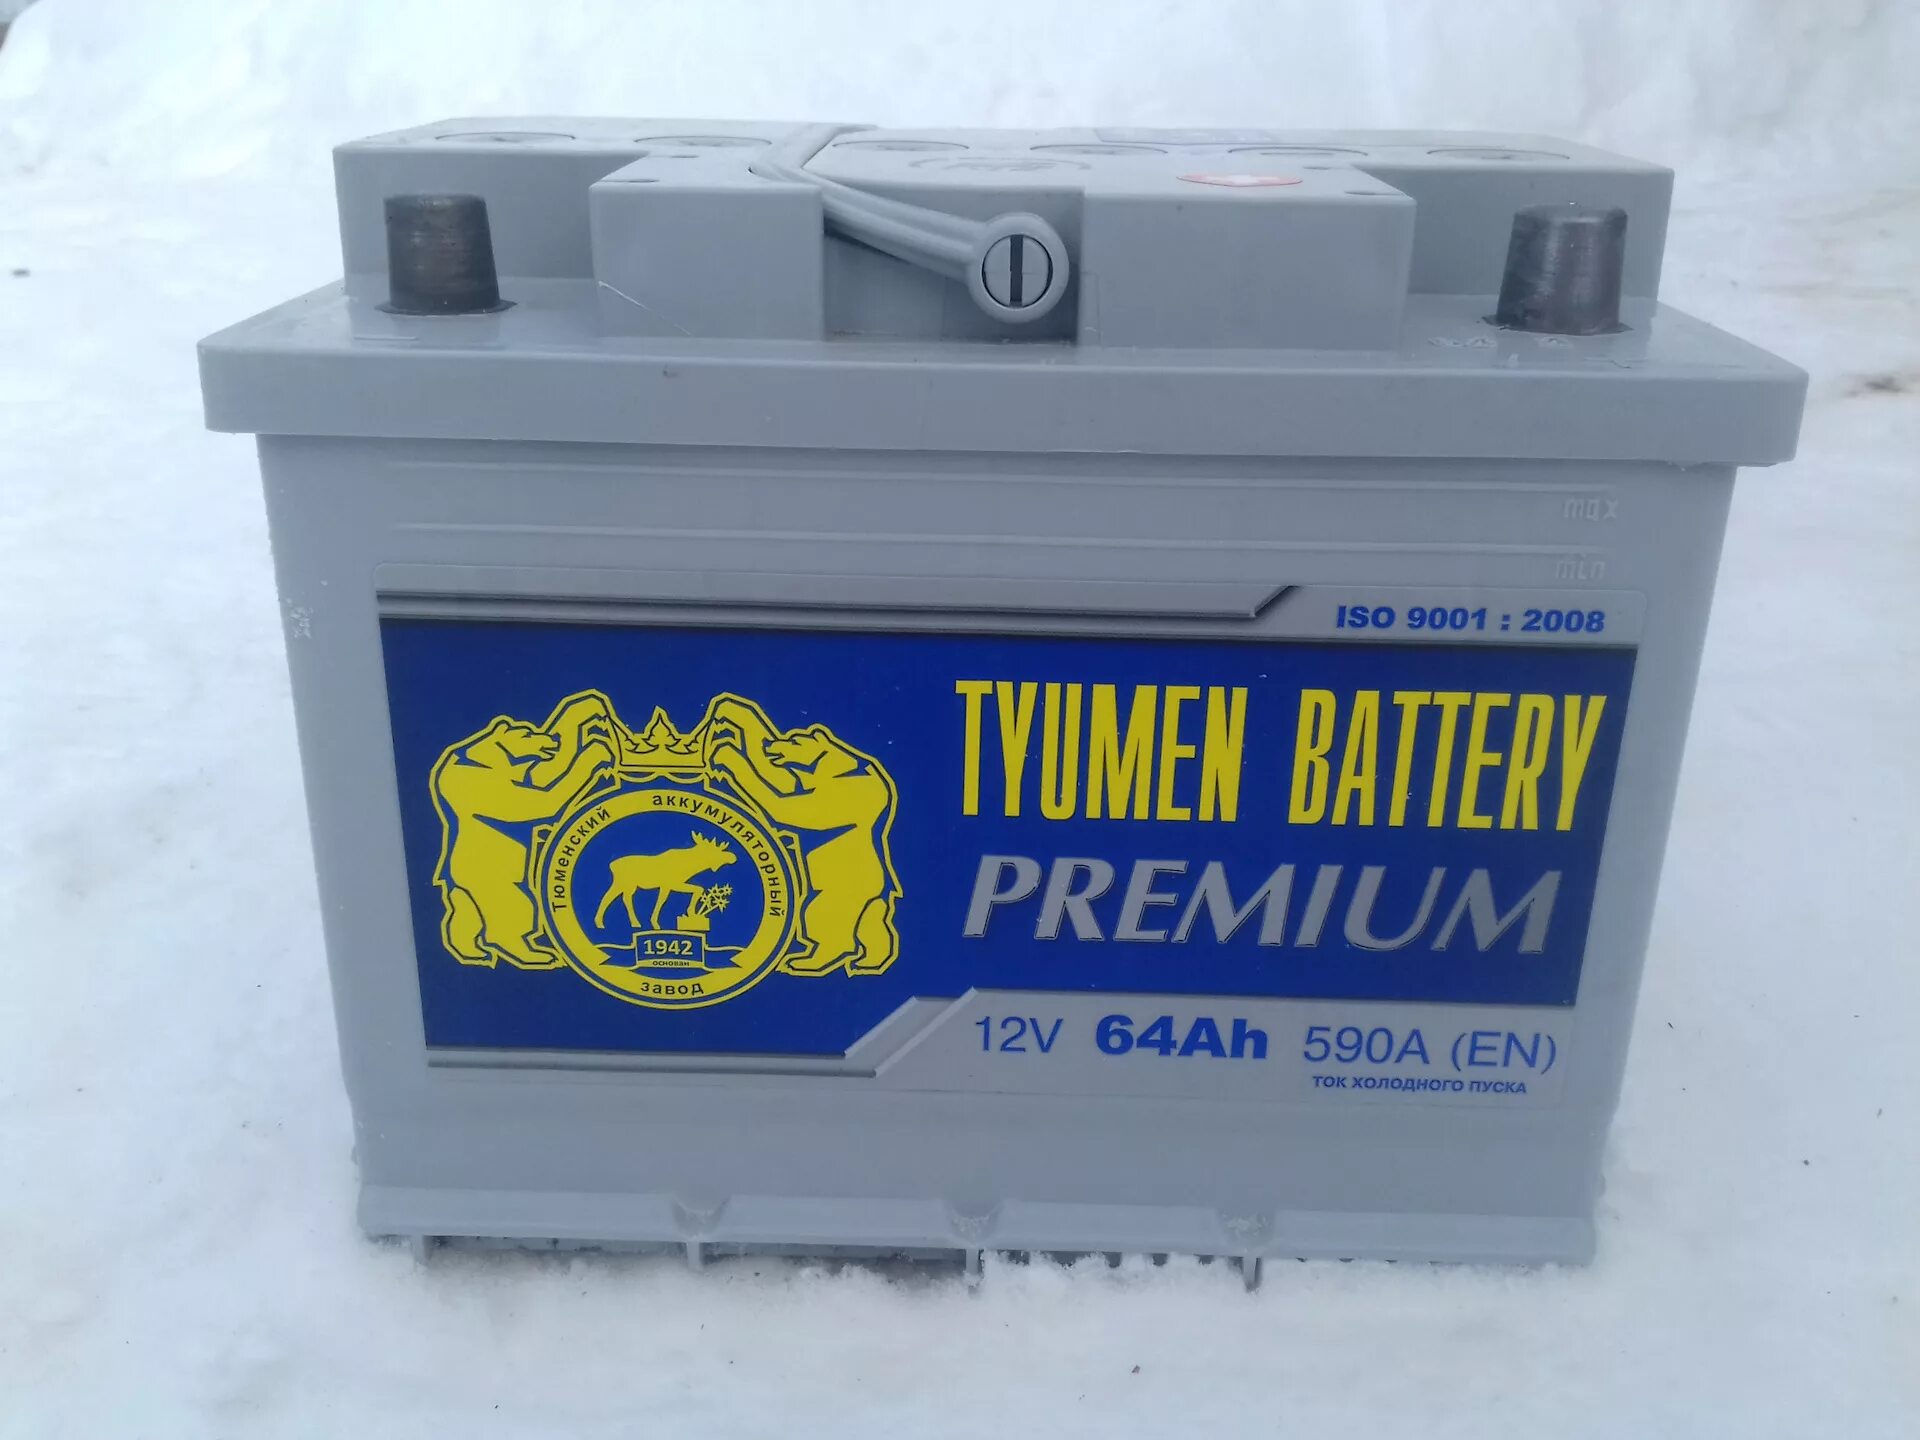 Холодные аккумуляторы. Аккумулятор Tyumen Battery Premium. Аккумулятор спектра 60. Тюмень аккумулятор драйв2. Tyumen Battery Premium подделки.